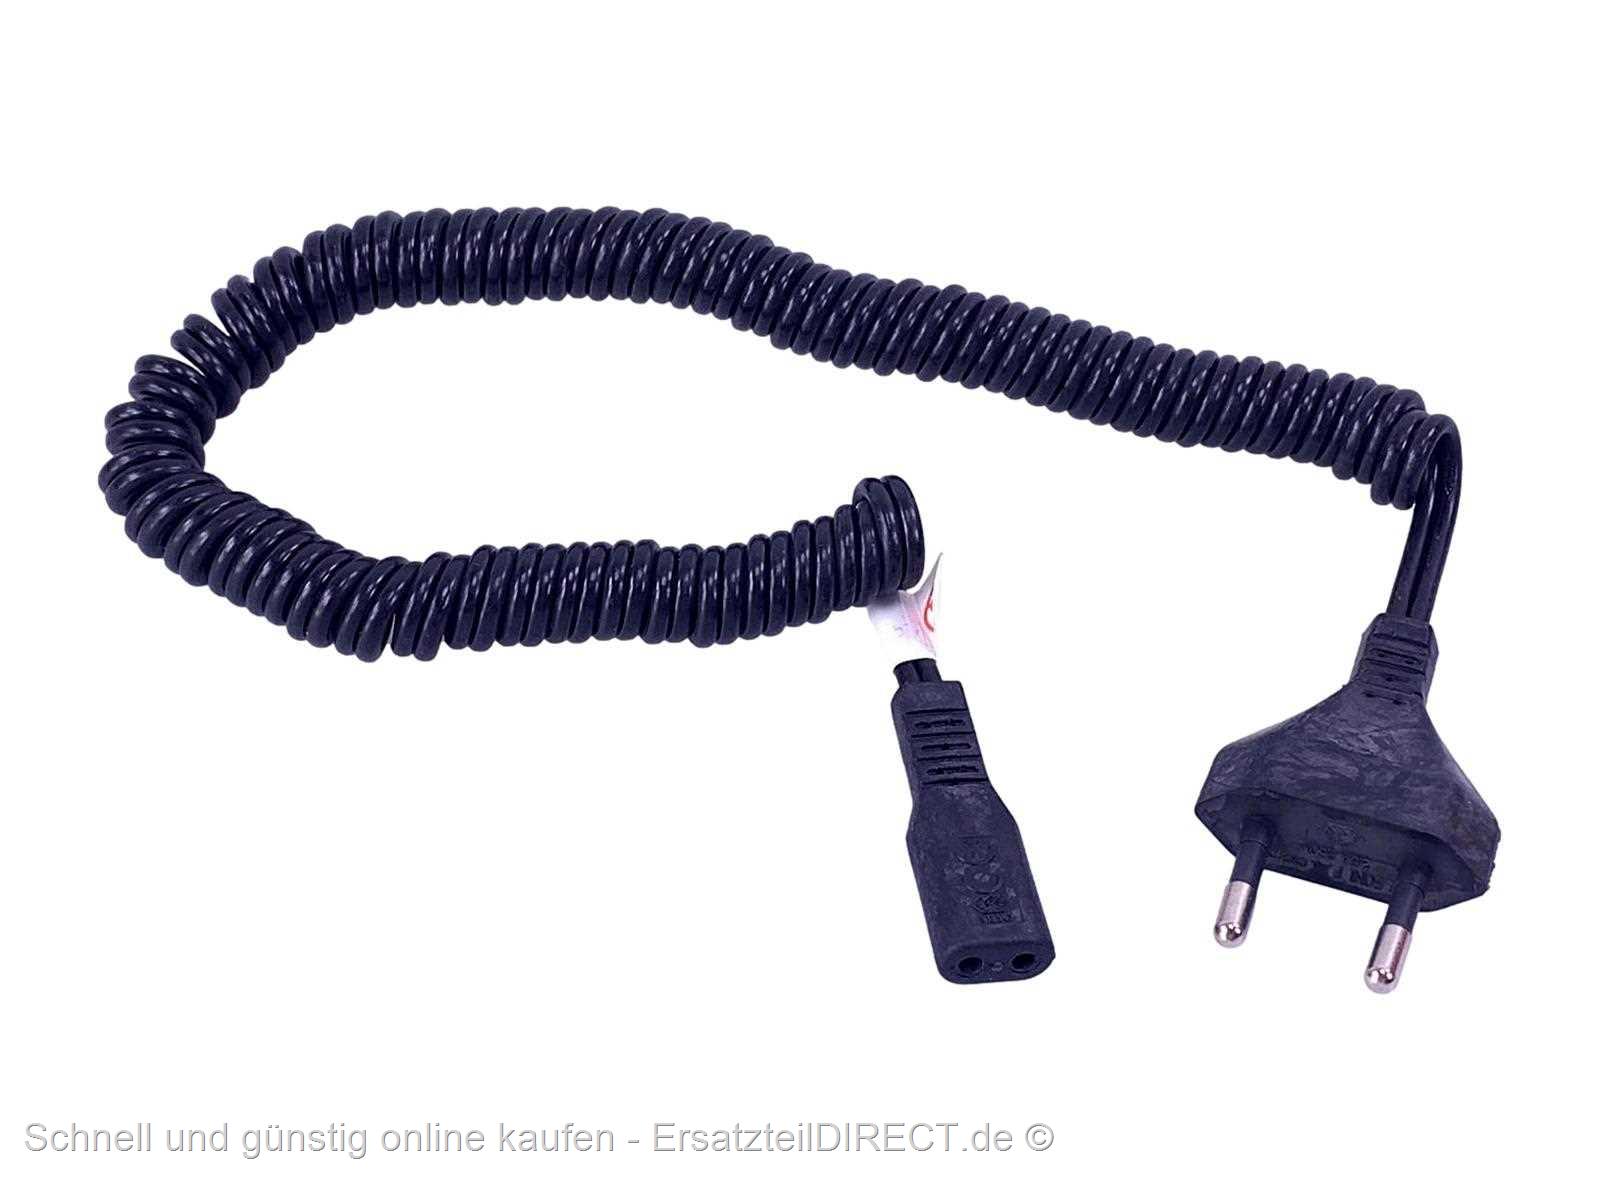 vhbw USB-Ladekabel kompatibel mit Philips Rasierer SCF284/02 Rasierer -  Netzkabel, 100 cm, Schwarz